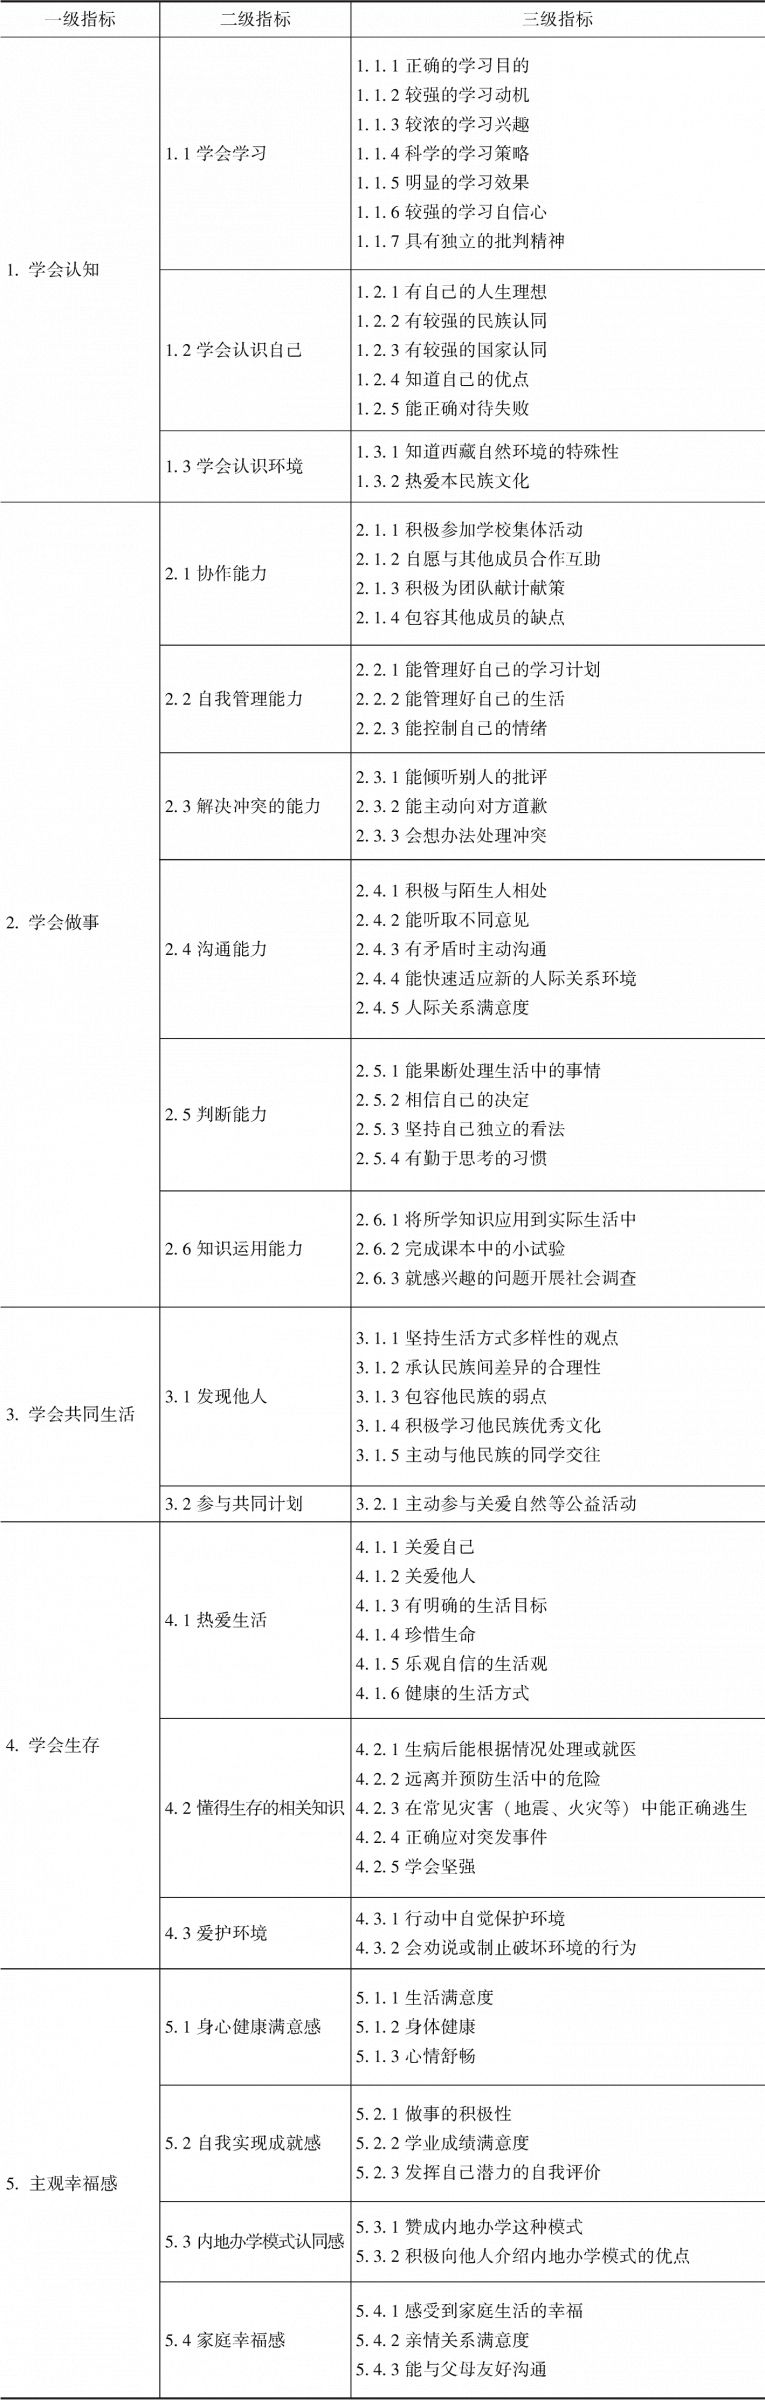 表4-4 内地西藏班教育成效评价指标体系